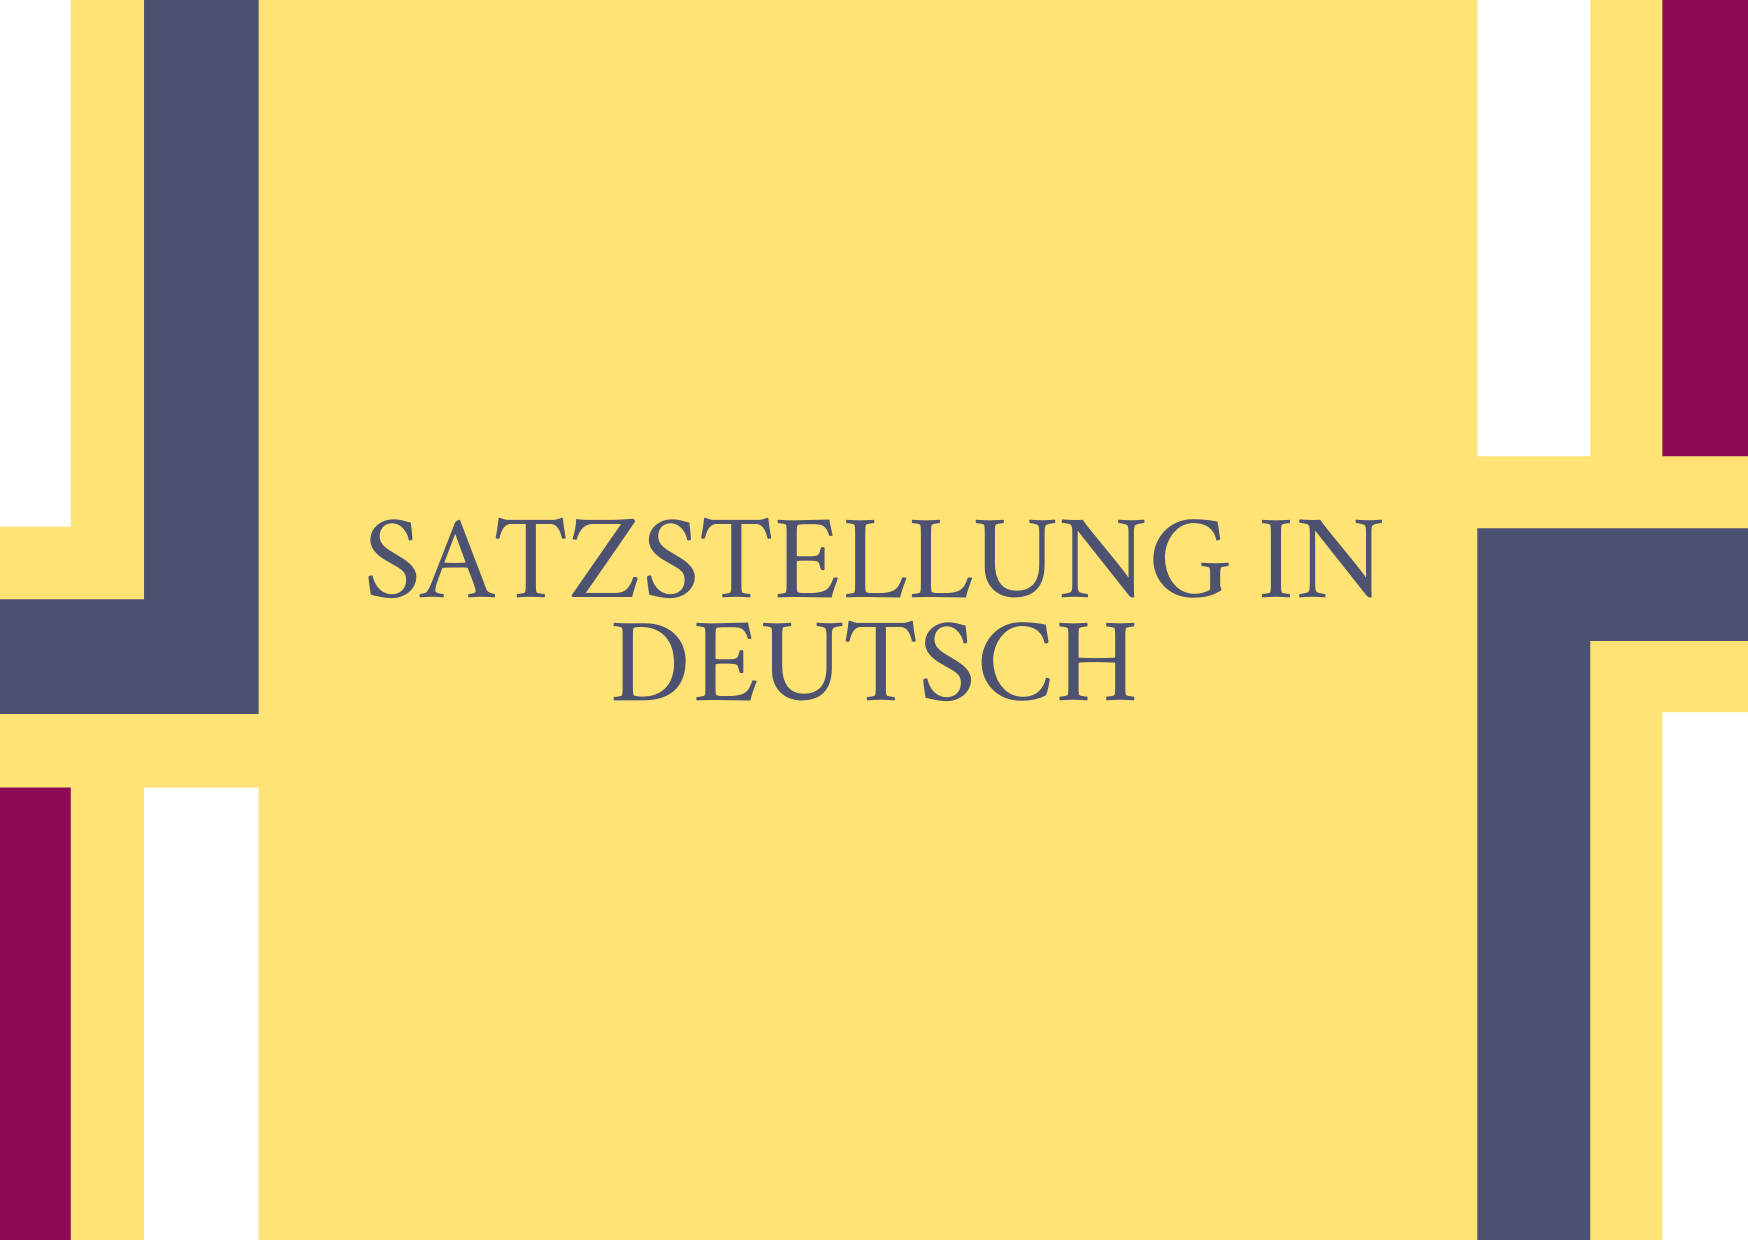 Satzstellung in Deutsch